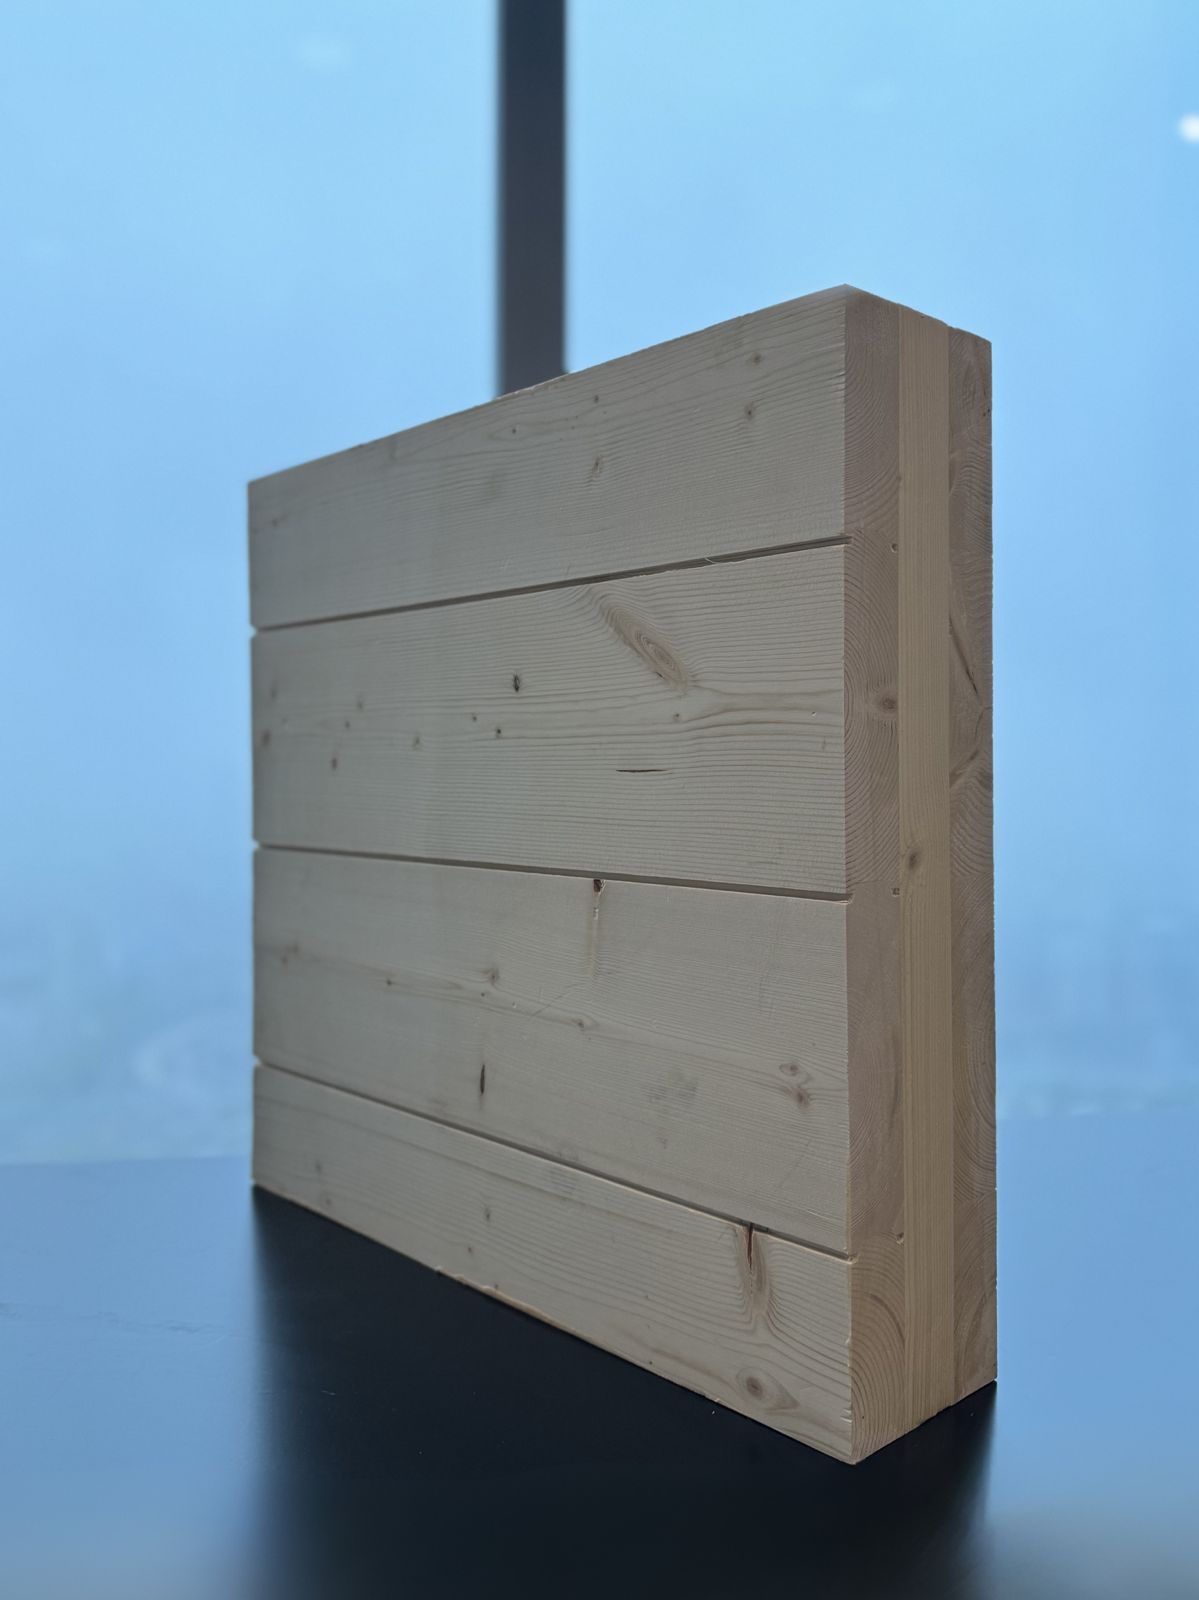 Segezha Group разработала новый продукт для деревянного домостроения - лицевую CLT-плиту с фаской.